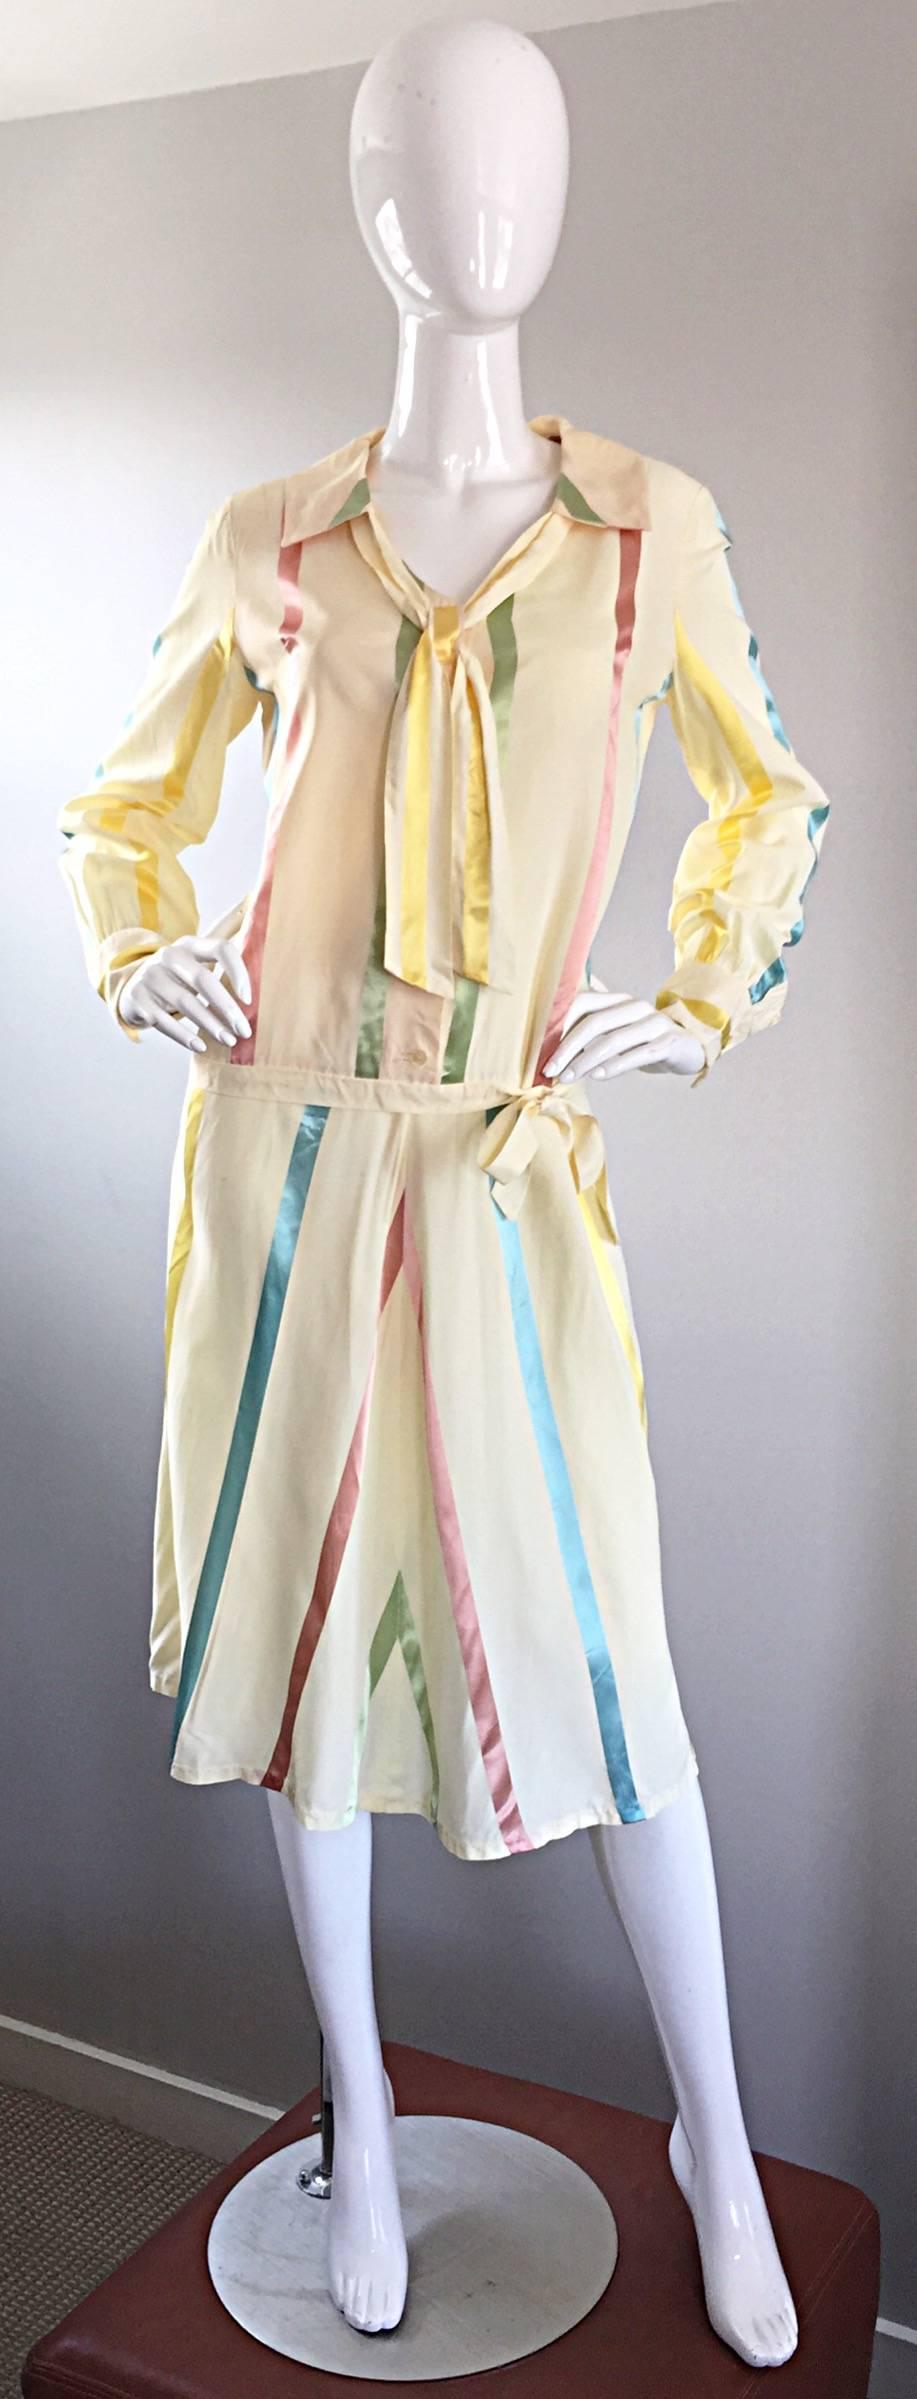 Unglaublich schickes Vintage-Kleid aus Seide aus den 20er Jahren! Klassisches Modell mit niedriger Taille und seitlicher Schleife an der Taille. Krawatte im Nacken. Elfenbeinfarbene Seide mit vertikalen Streifen in Pastellblau, Rosa, Gelb und Grün.